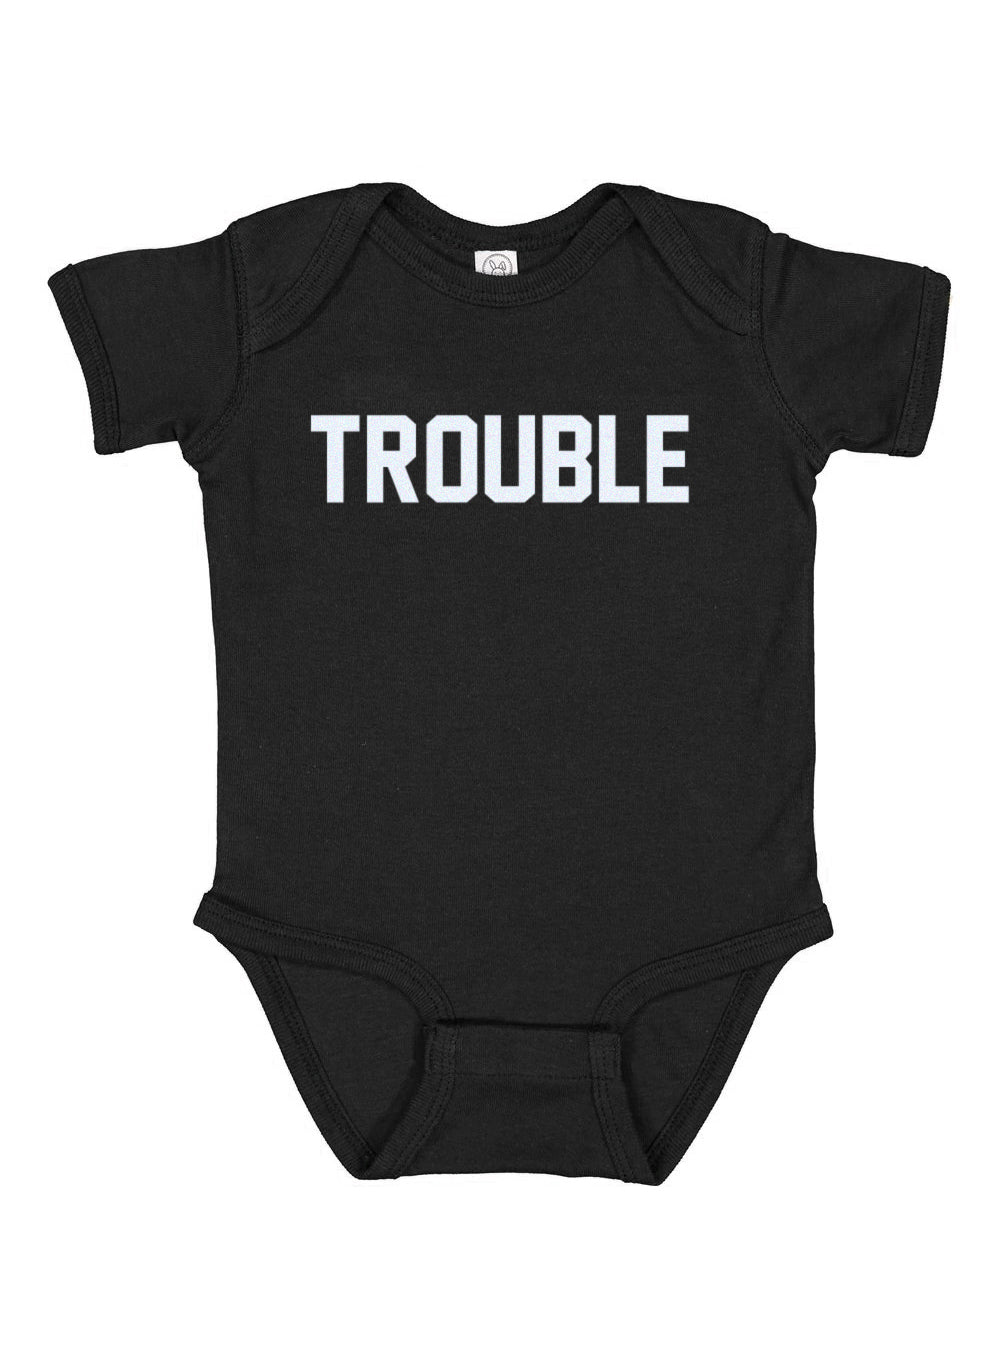 Trouble Baby Onesie